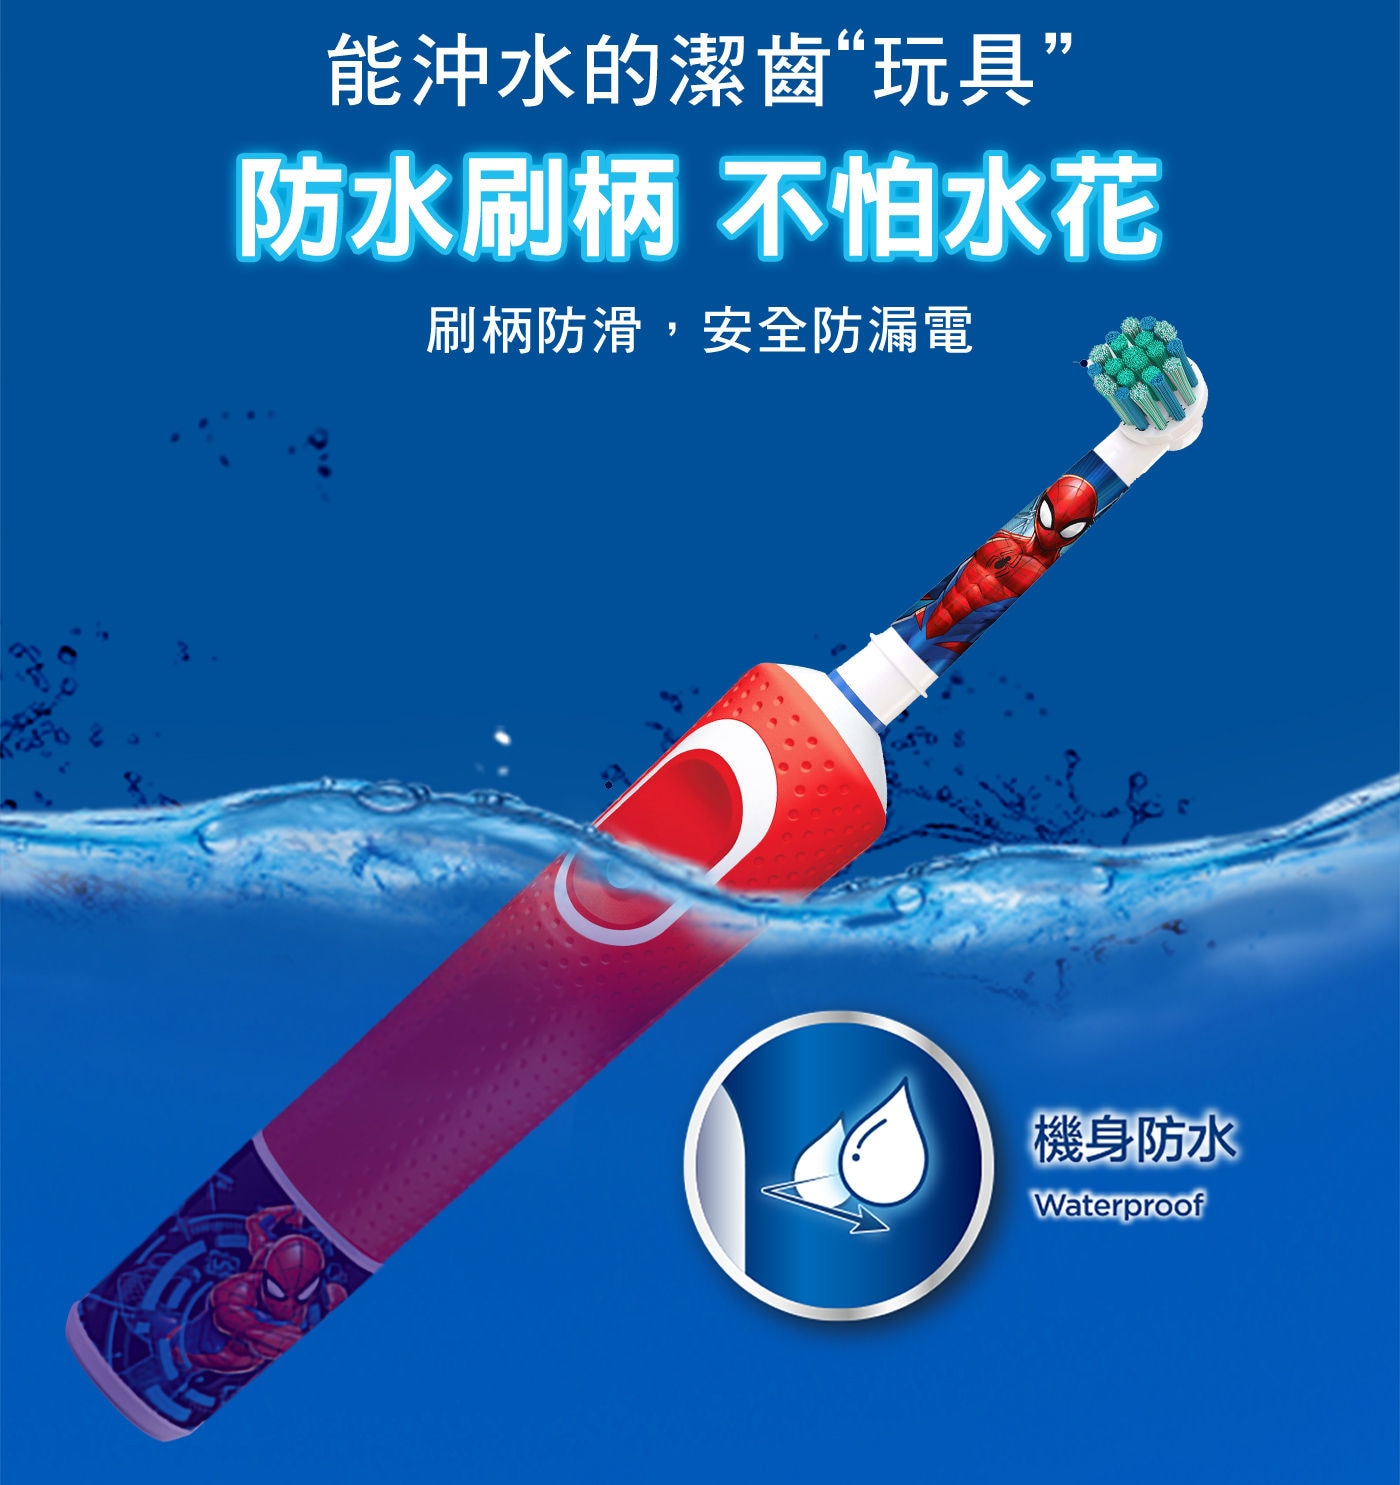 歐樂B 充電式兒童電動牙刷組 防水刷柄 不怕水花 機身防水